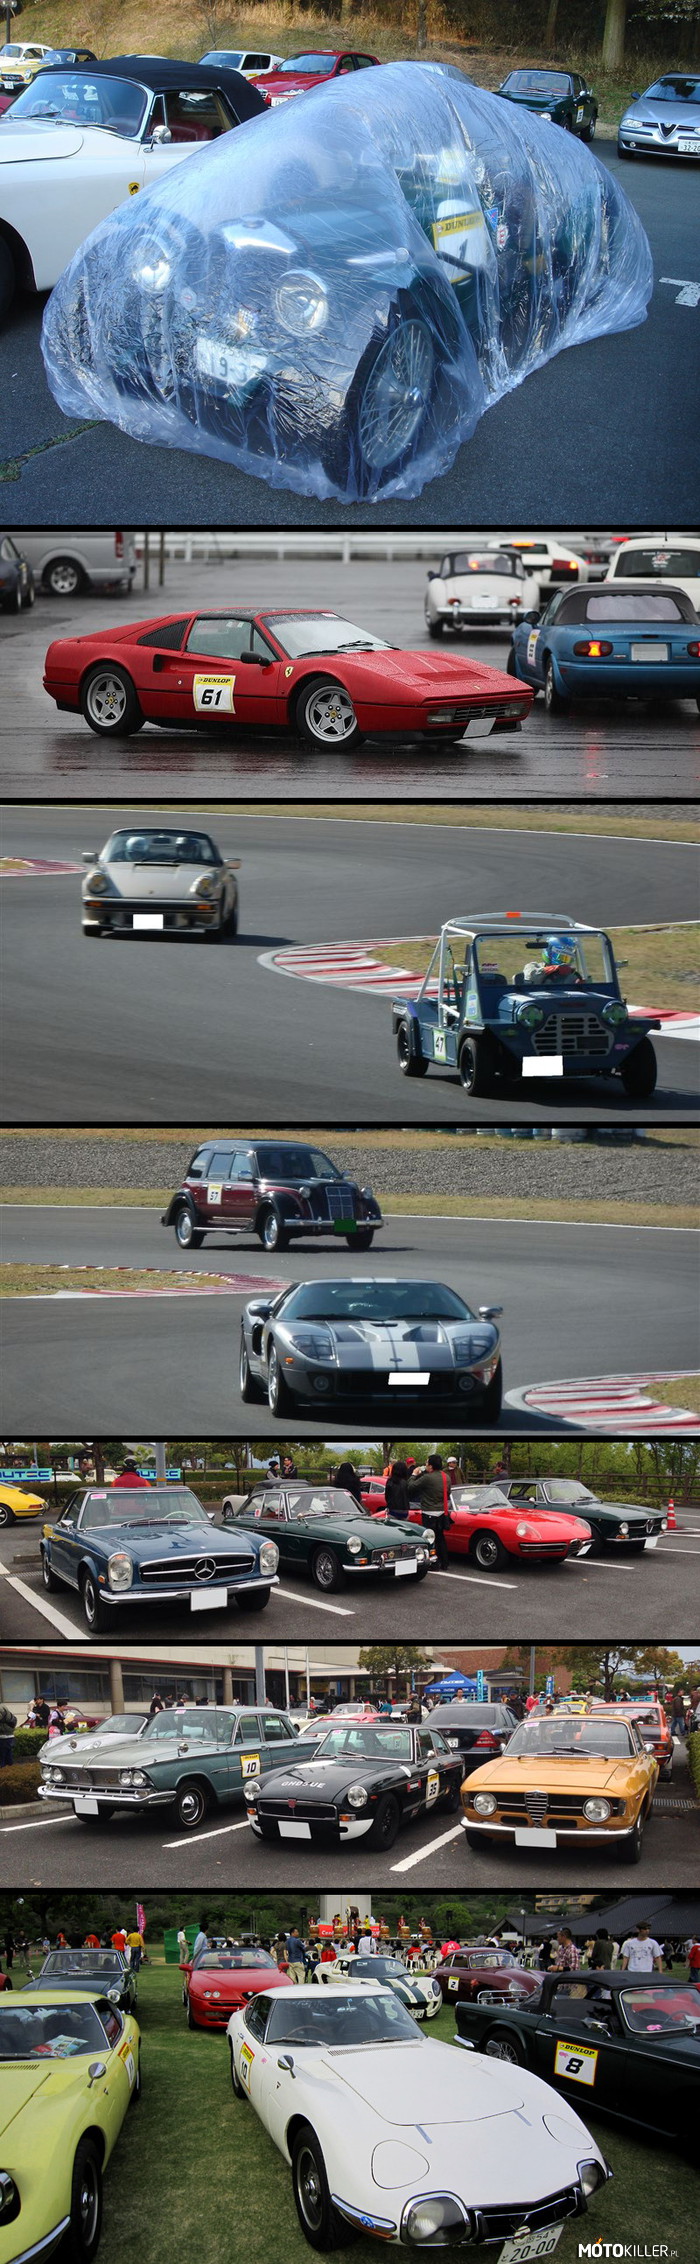 Cento Miglia Japan – Nie sposób umieścić na jednym zdjęciu, ogromu różnych samochodów, jakie pojawiają się na tym japońskim zlocie, organizowanym od 2001 roku. 